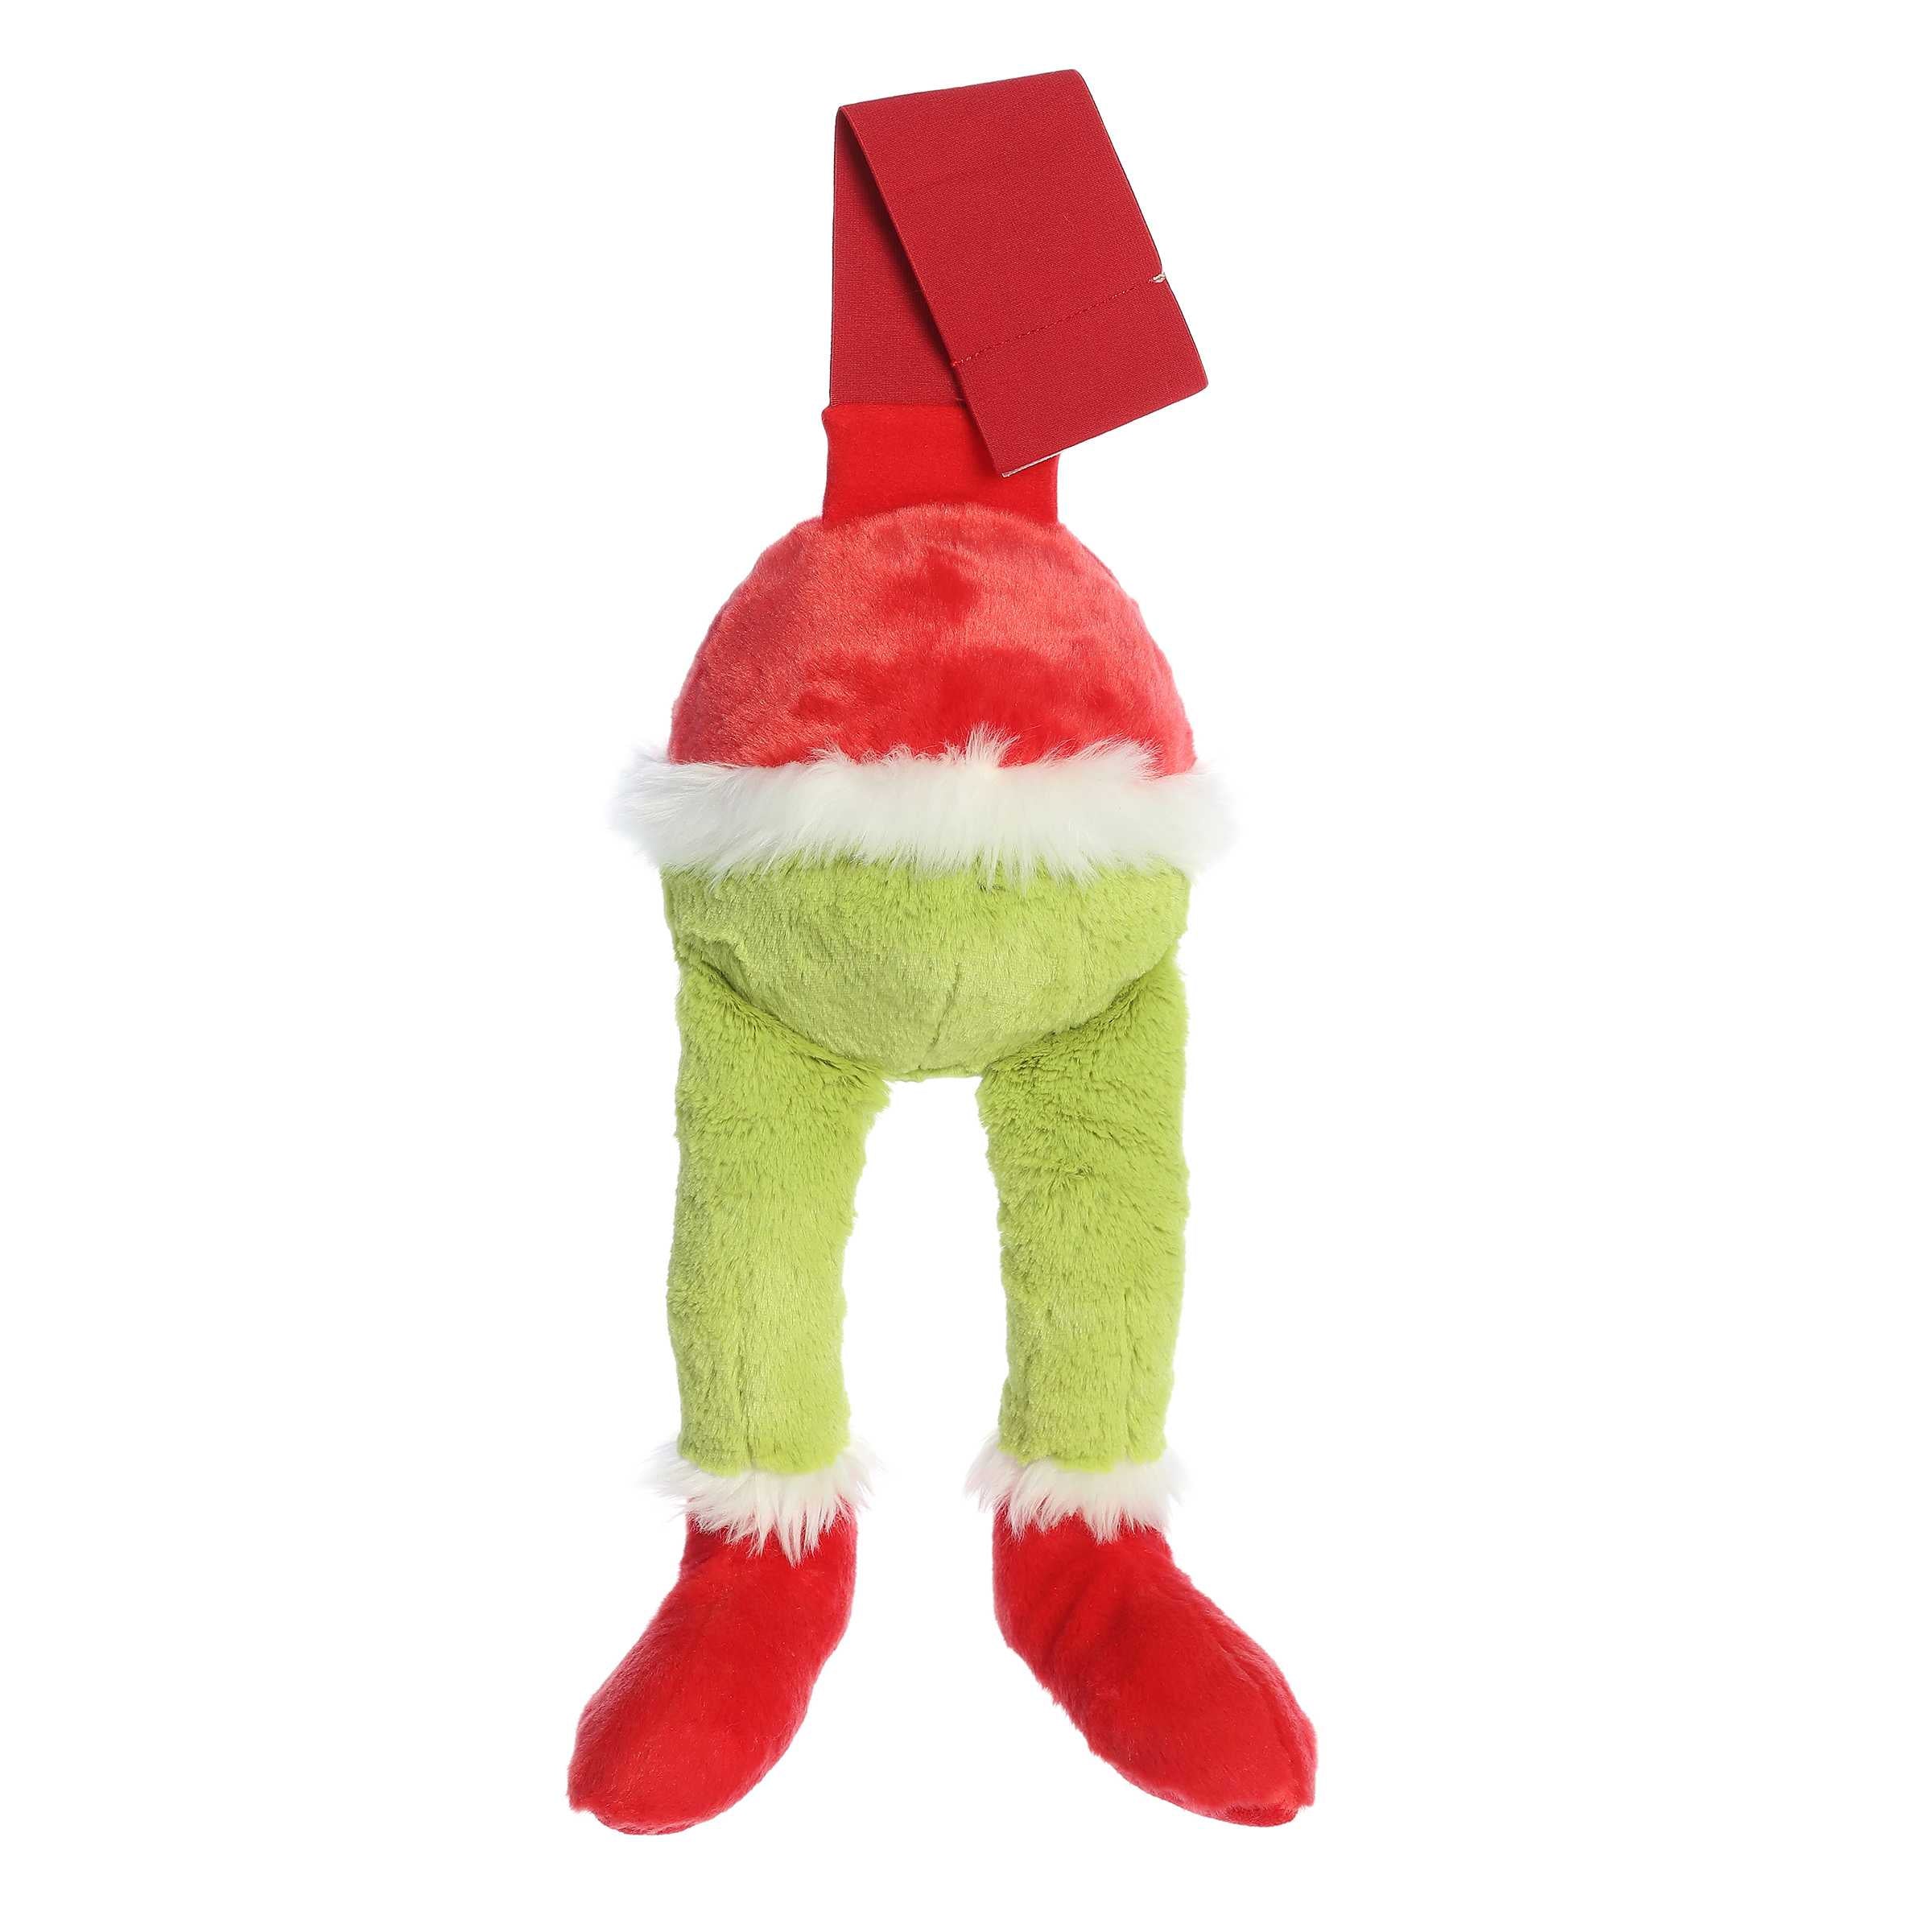 Peluche Navideño Dr. Seuss Grinch con Bufanda de 56 cm